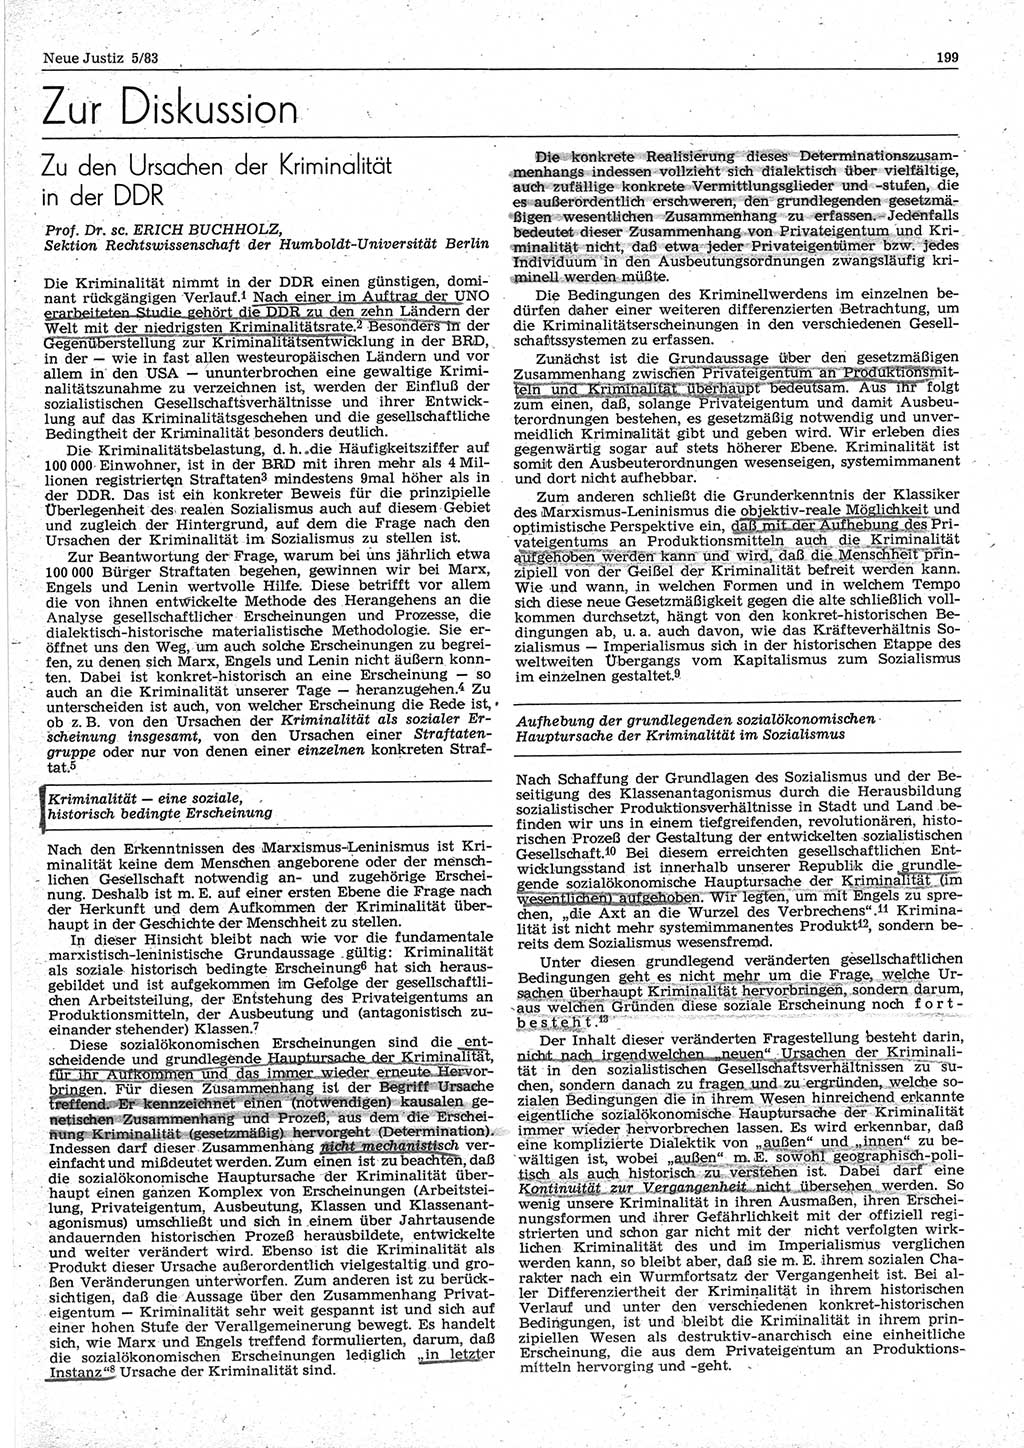 Neue Justiz (NJ), Zeitschrift für sozialistisches Recht und Gesetzlichkeit [Deutsche Demokratische Republik (DDR)], 37. Jahrgang 1983, Seite 199 (NJ DDR 1983, S. 199)